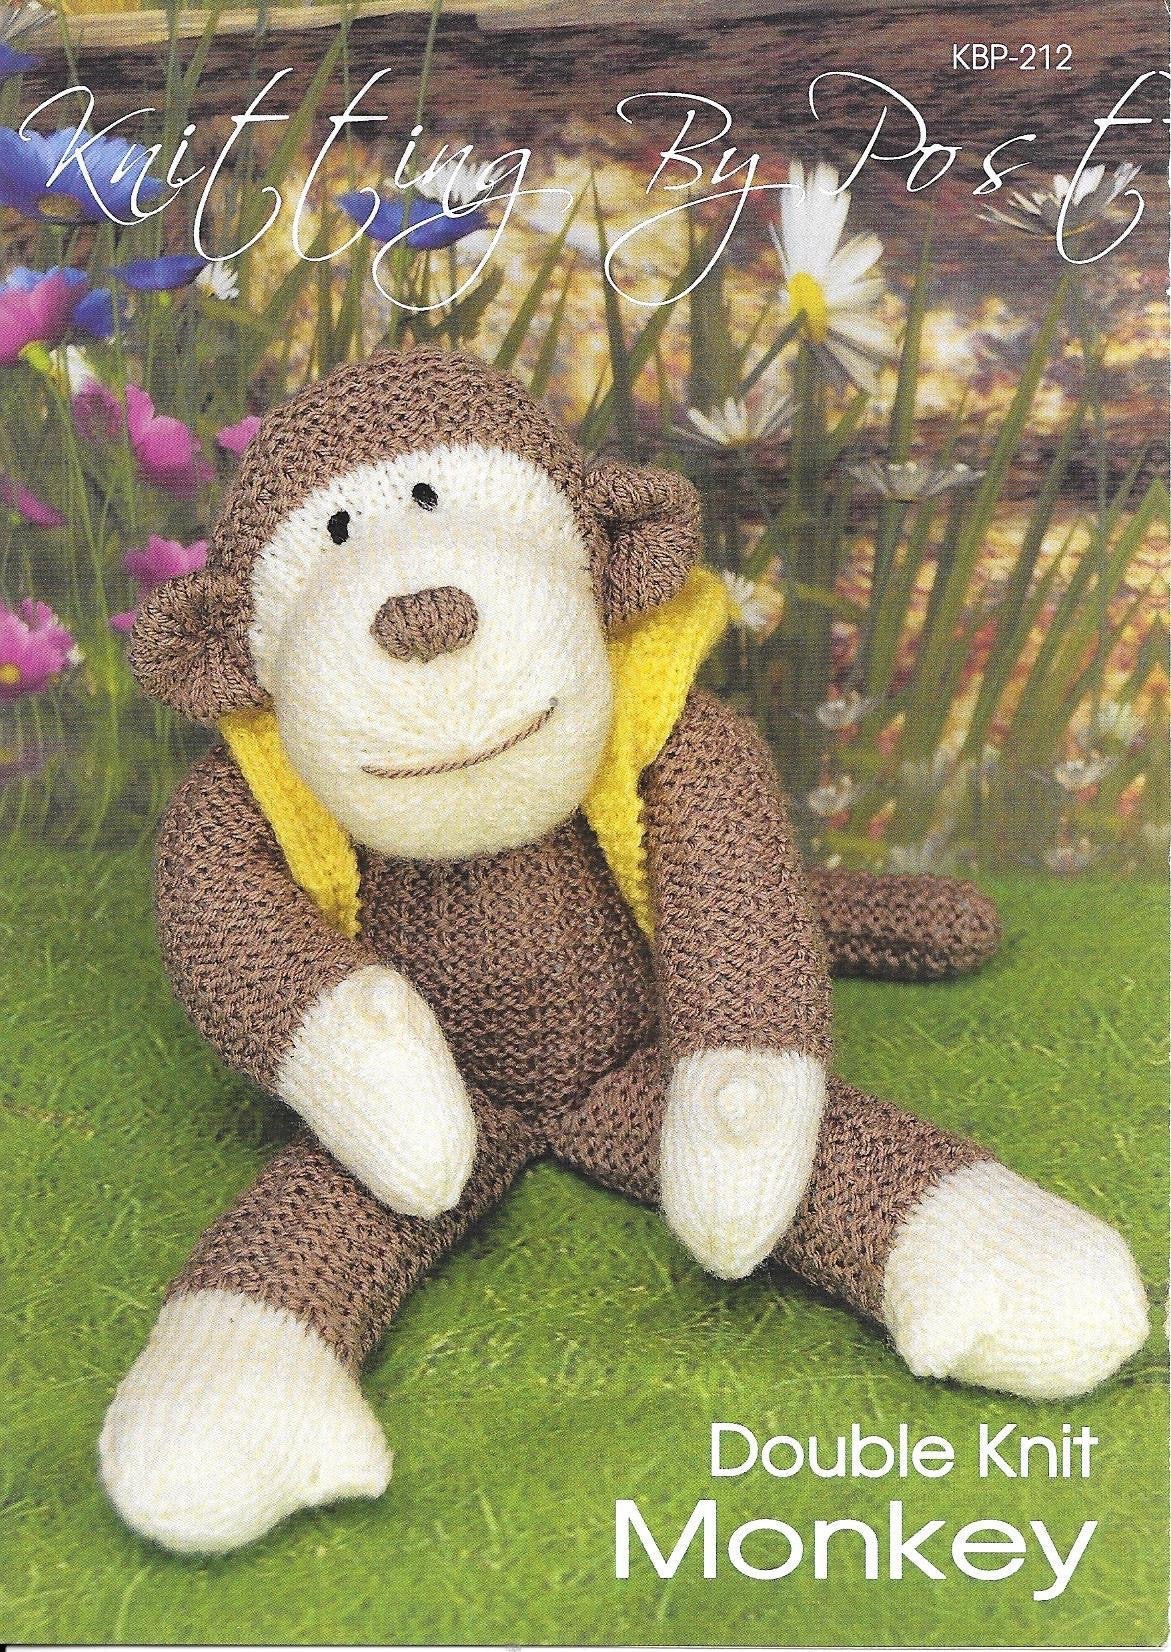 212 KBP212 Monkey toy in DK knitting pattern